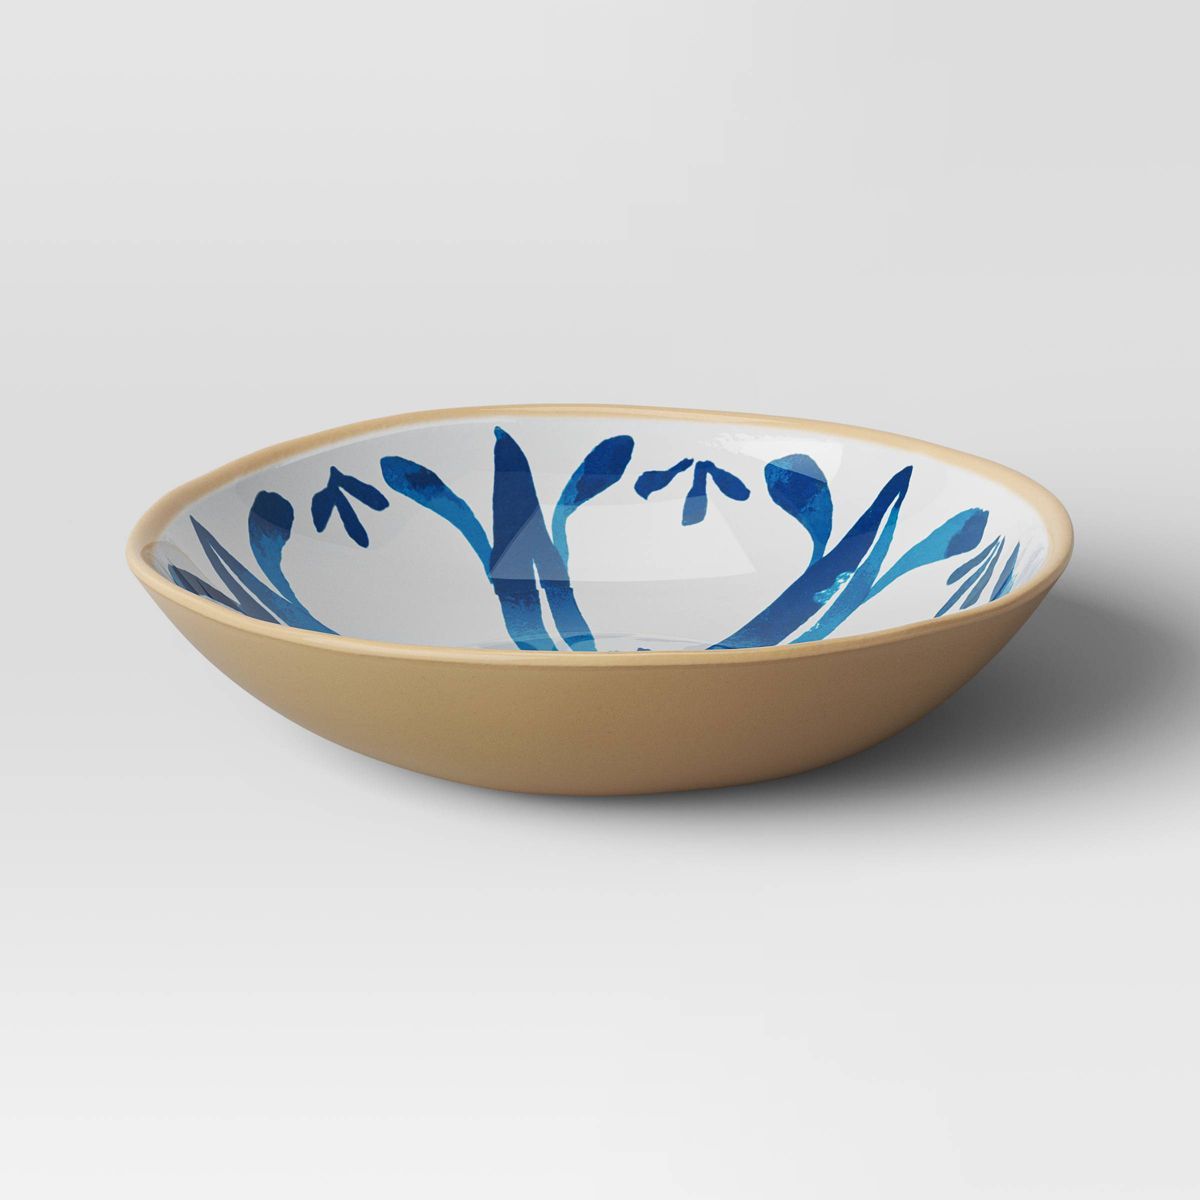 23.5oz Melamine Cereal Bowl Blue Print - Threshold™ | Target